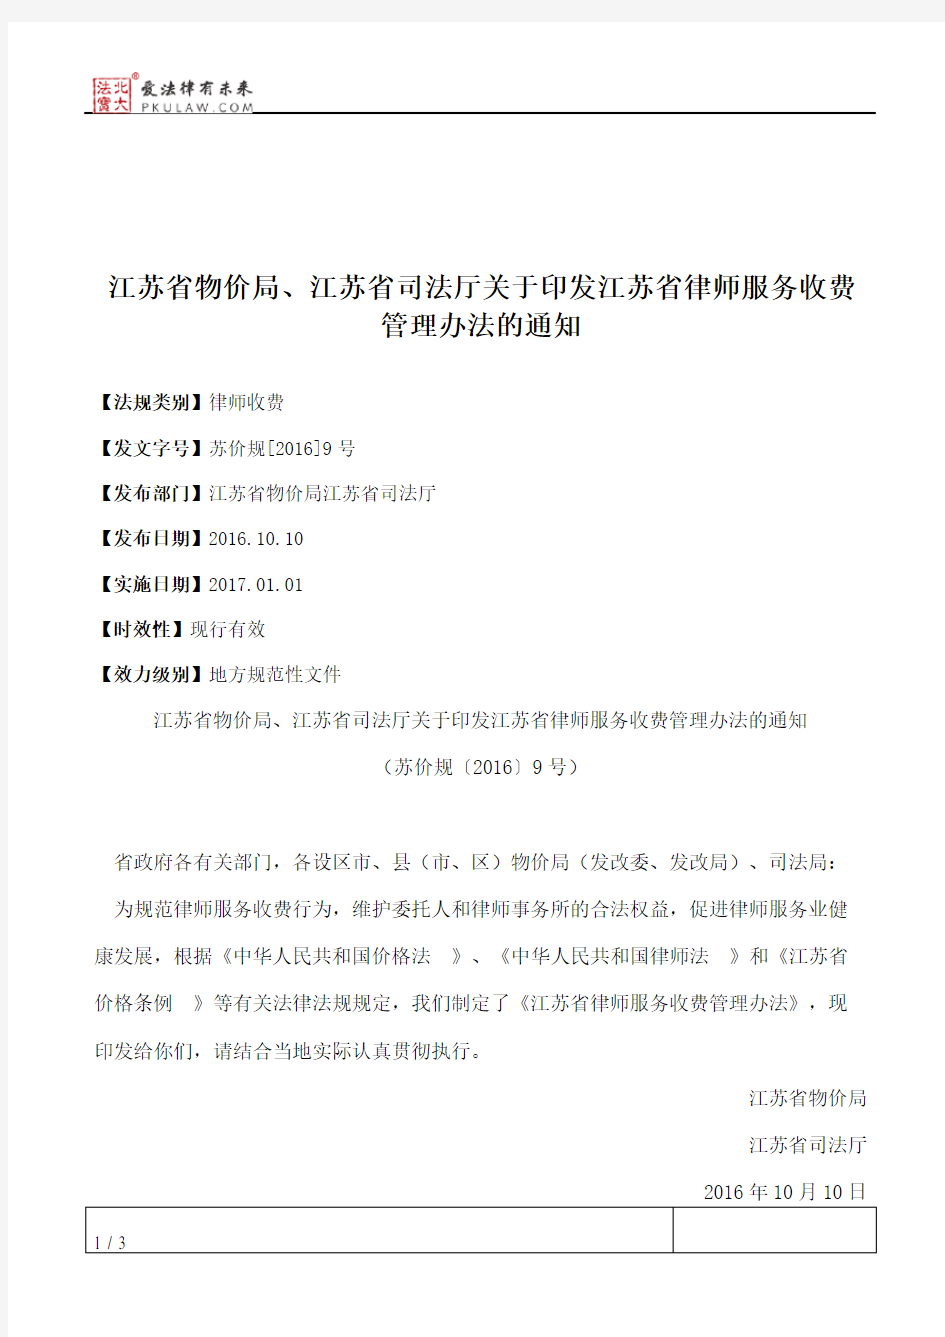 江苏省物价局、江苏省司法厅关于印发江苏省律师服务收费管理办法的通知